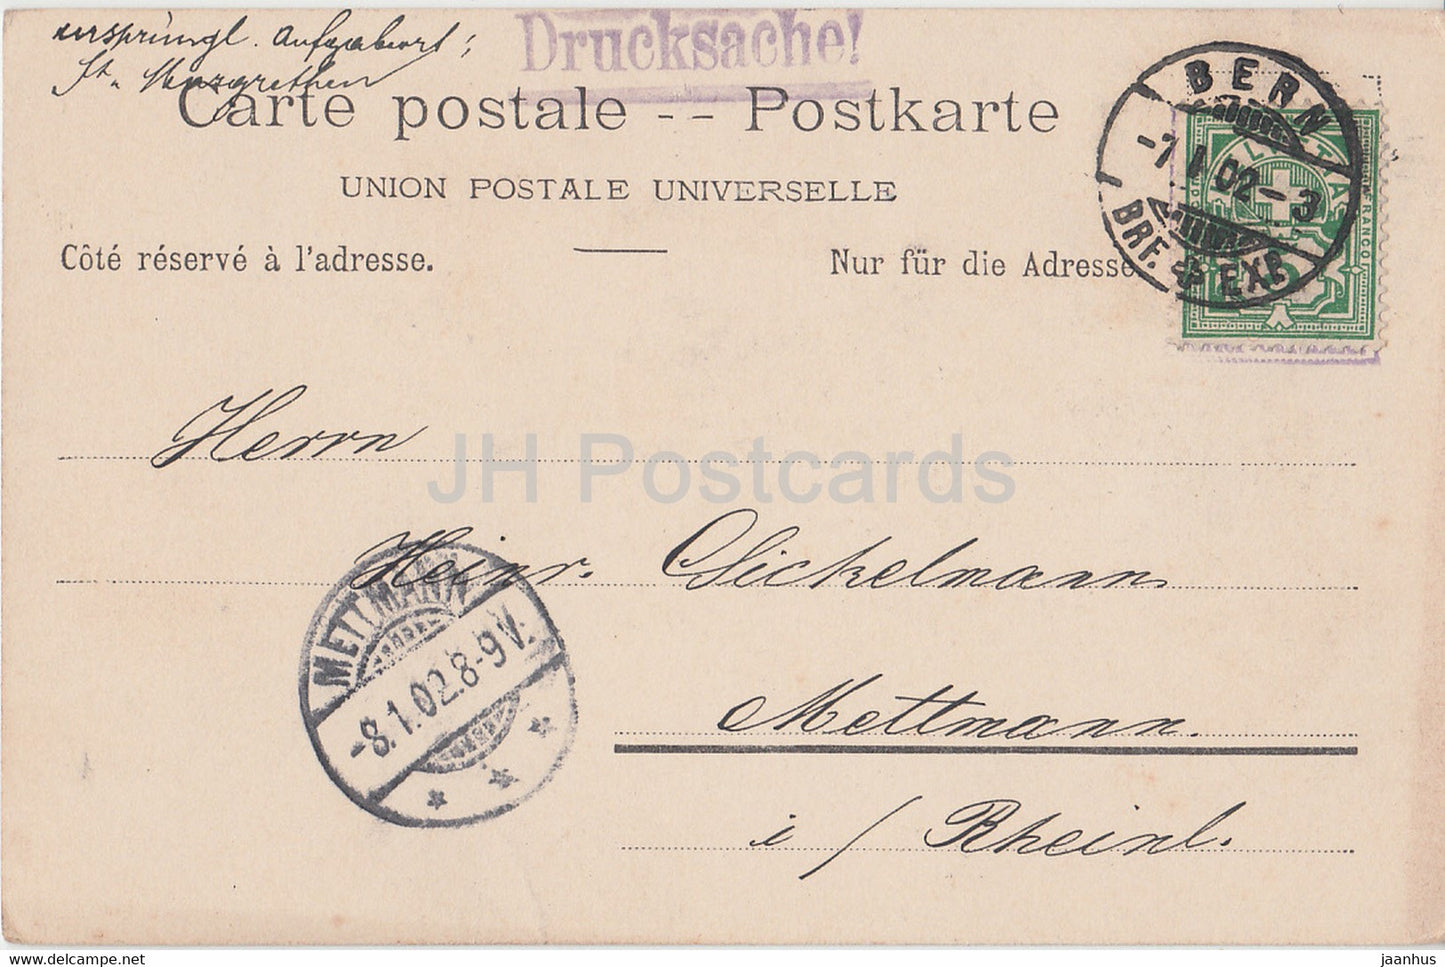 Bern - Bern - Kornhausbrücke - Brücke - 450 - alte Postkarte - 1902 - Schweiz - gebraucht